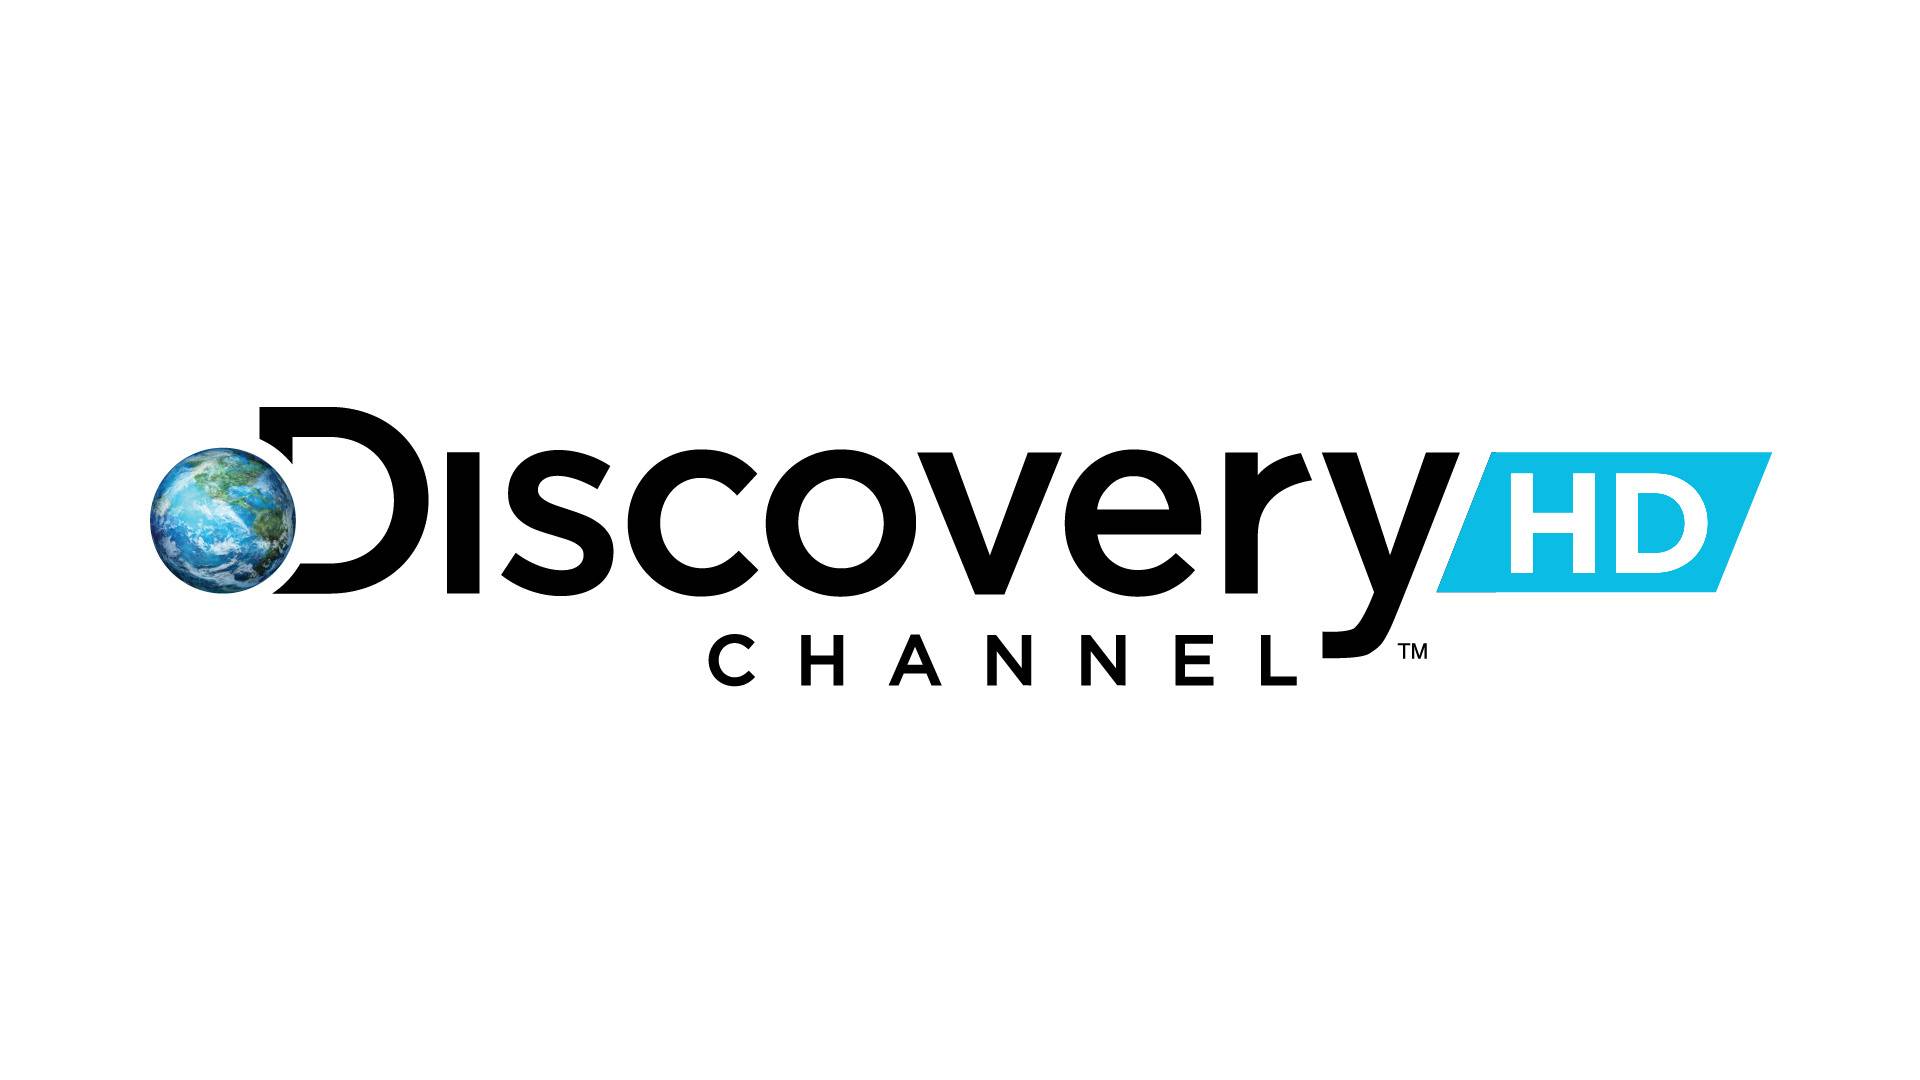 Обои Discovery HD channel hi-tech на рабочий стол